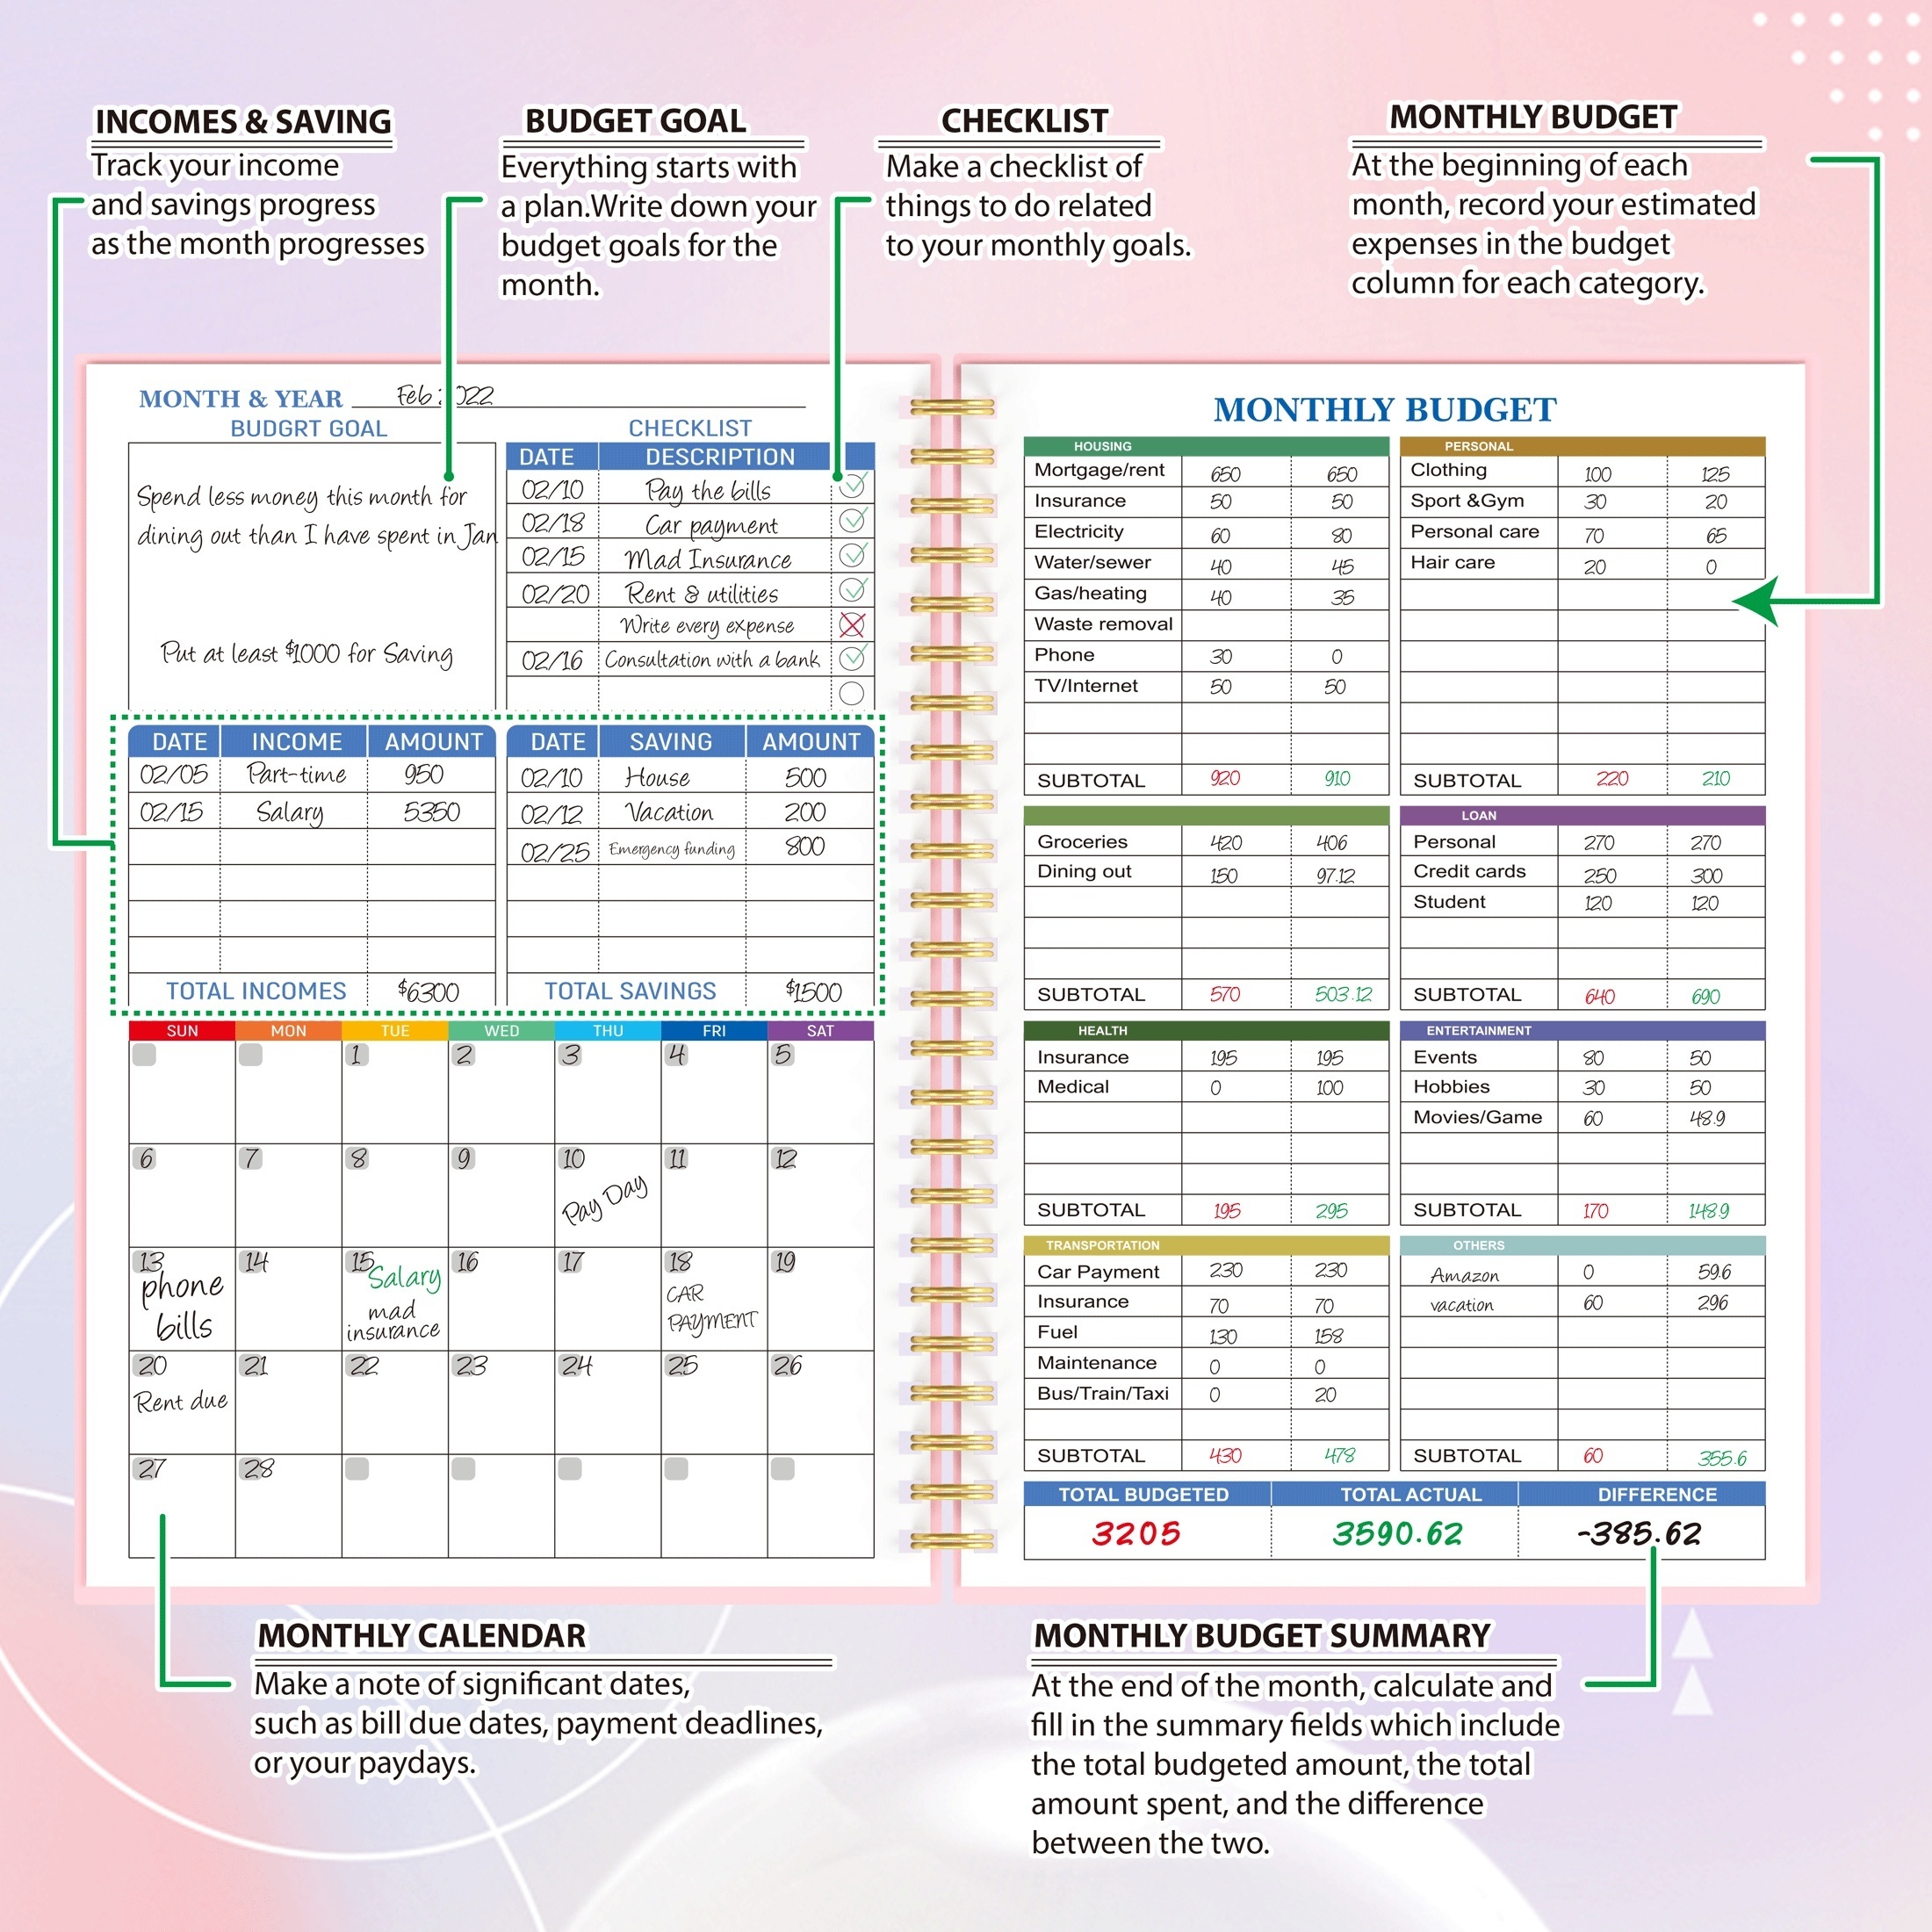 Planificador de presupuesto: organizador mensual de finanzas con cuaderno  de seguimiento de gastos para administrar tu dinero de manera efectiva